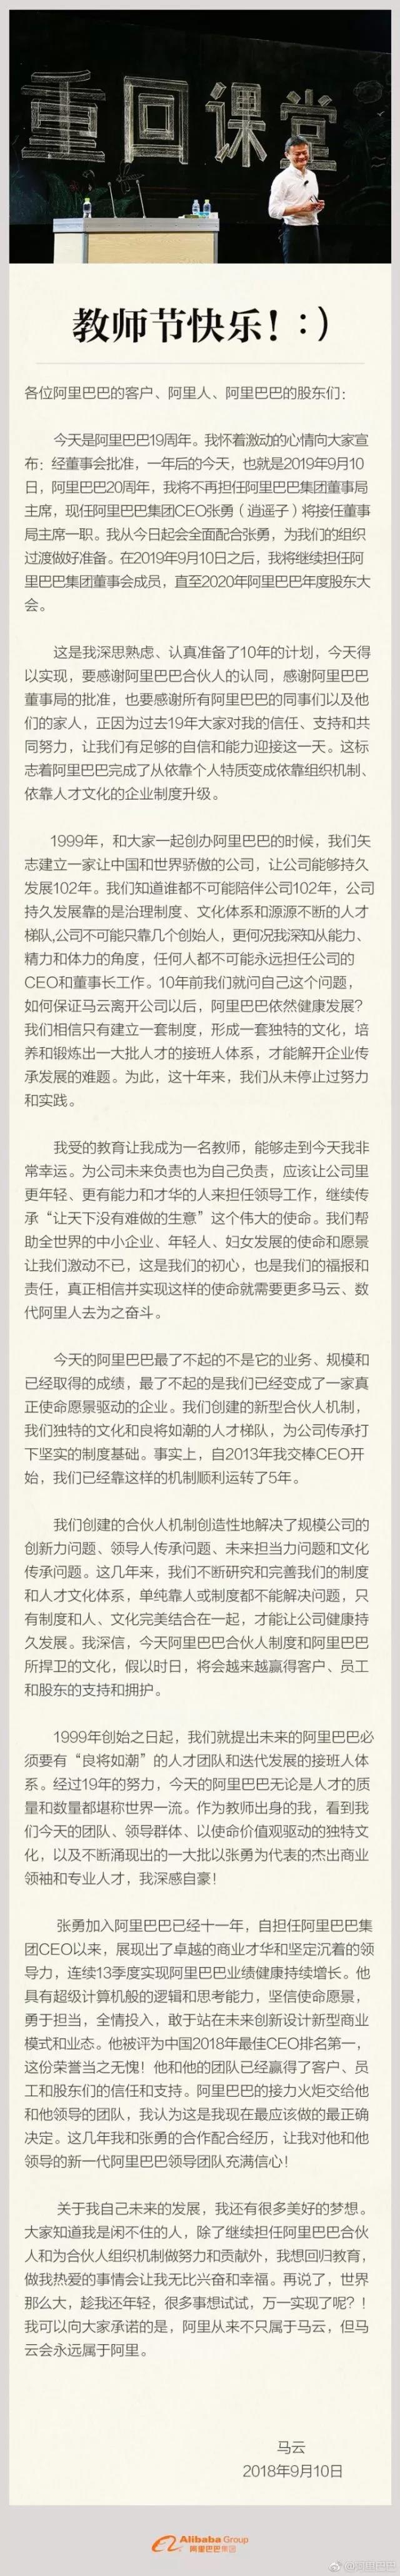 马云宣布将不再担任阿里巴巴集团董事局主席